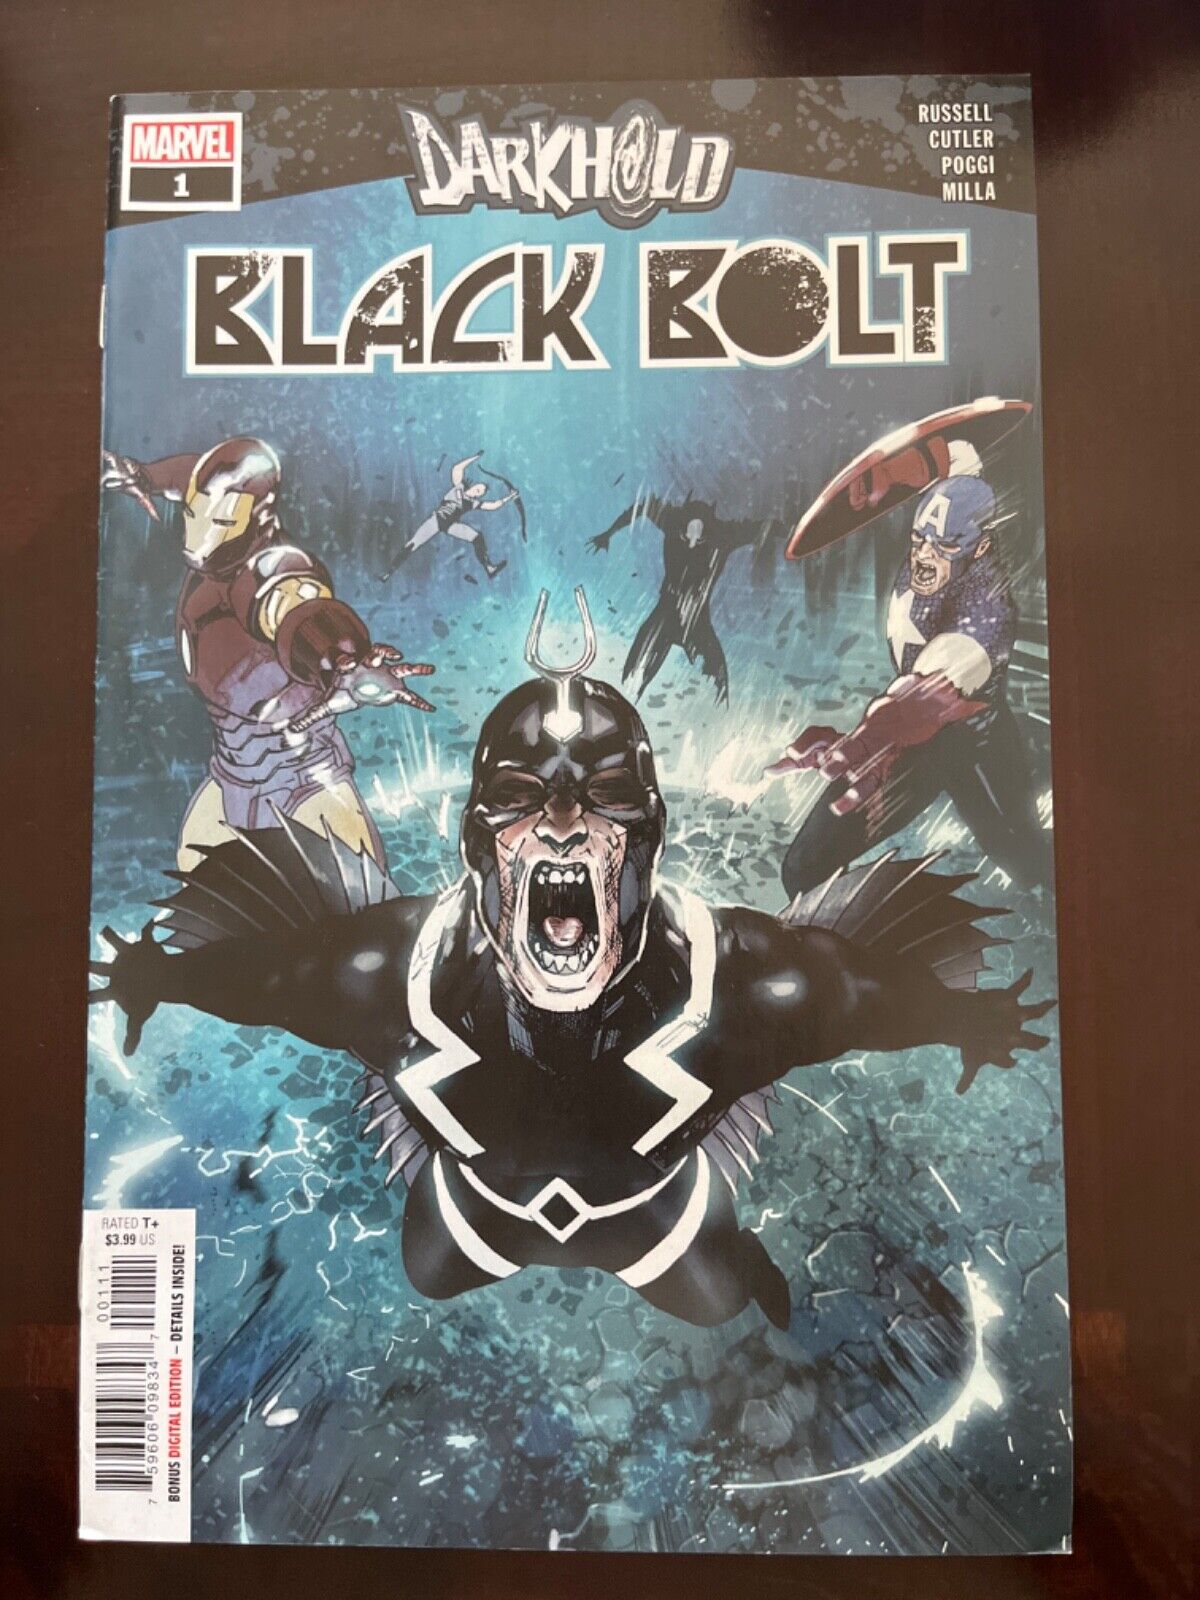 Darkhold: Black Bolt #1 Vol. 1 (Marvel, 2022) VF